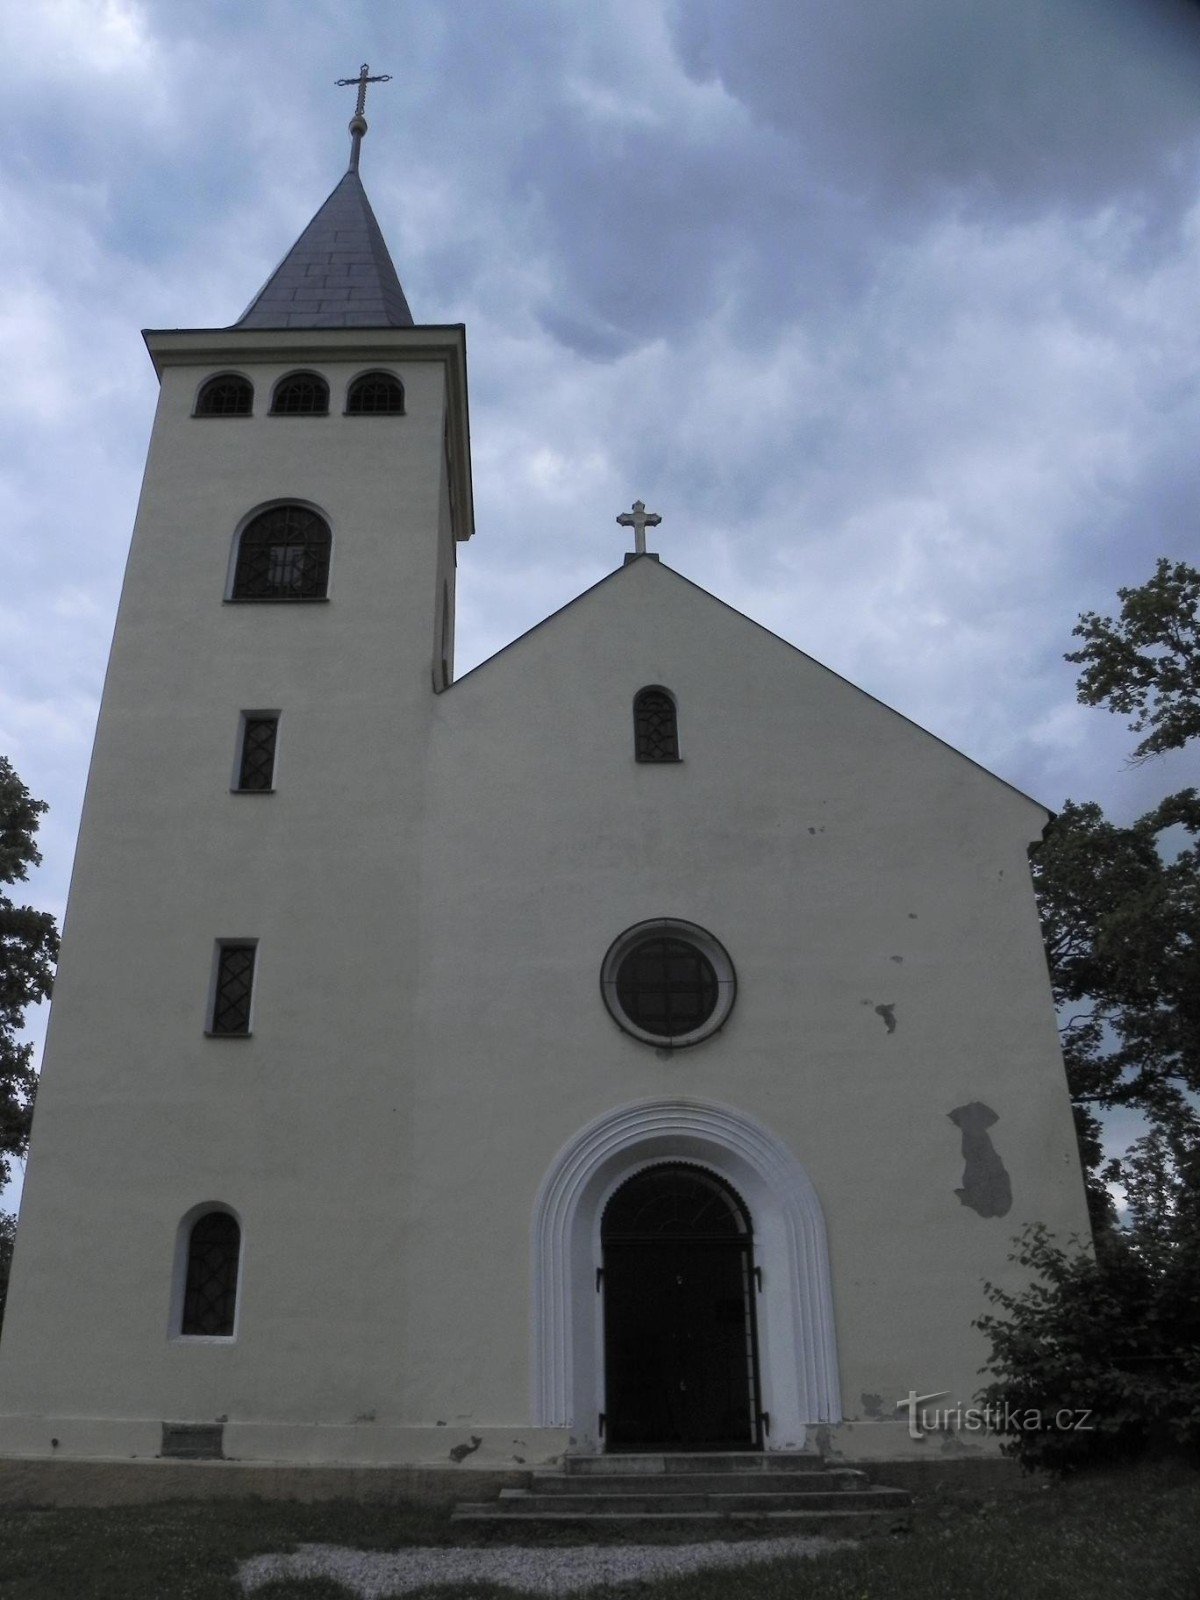 Křížovývrch、見張り塔、教会の正面